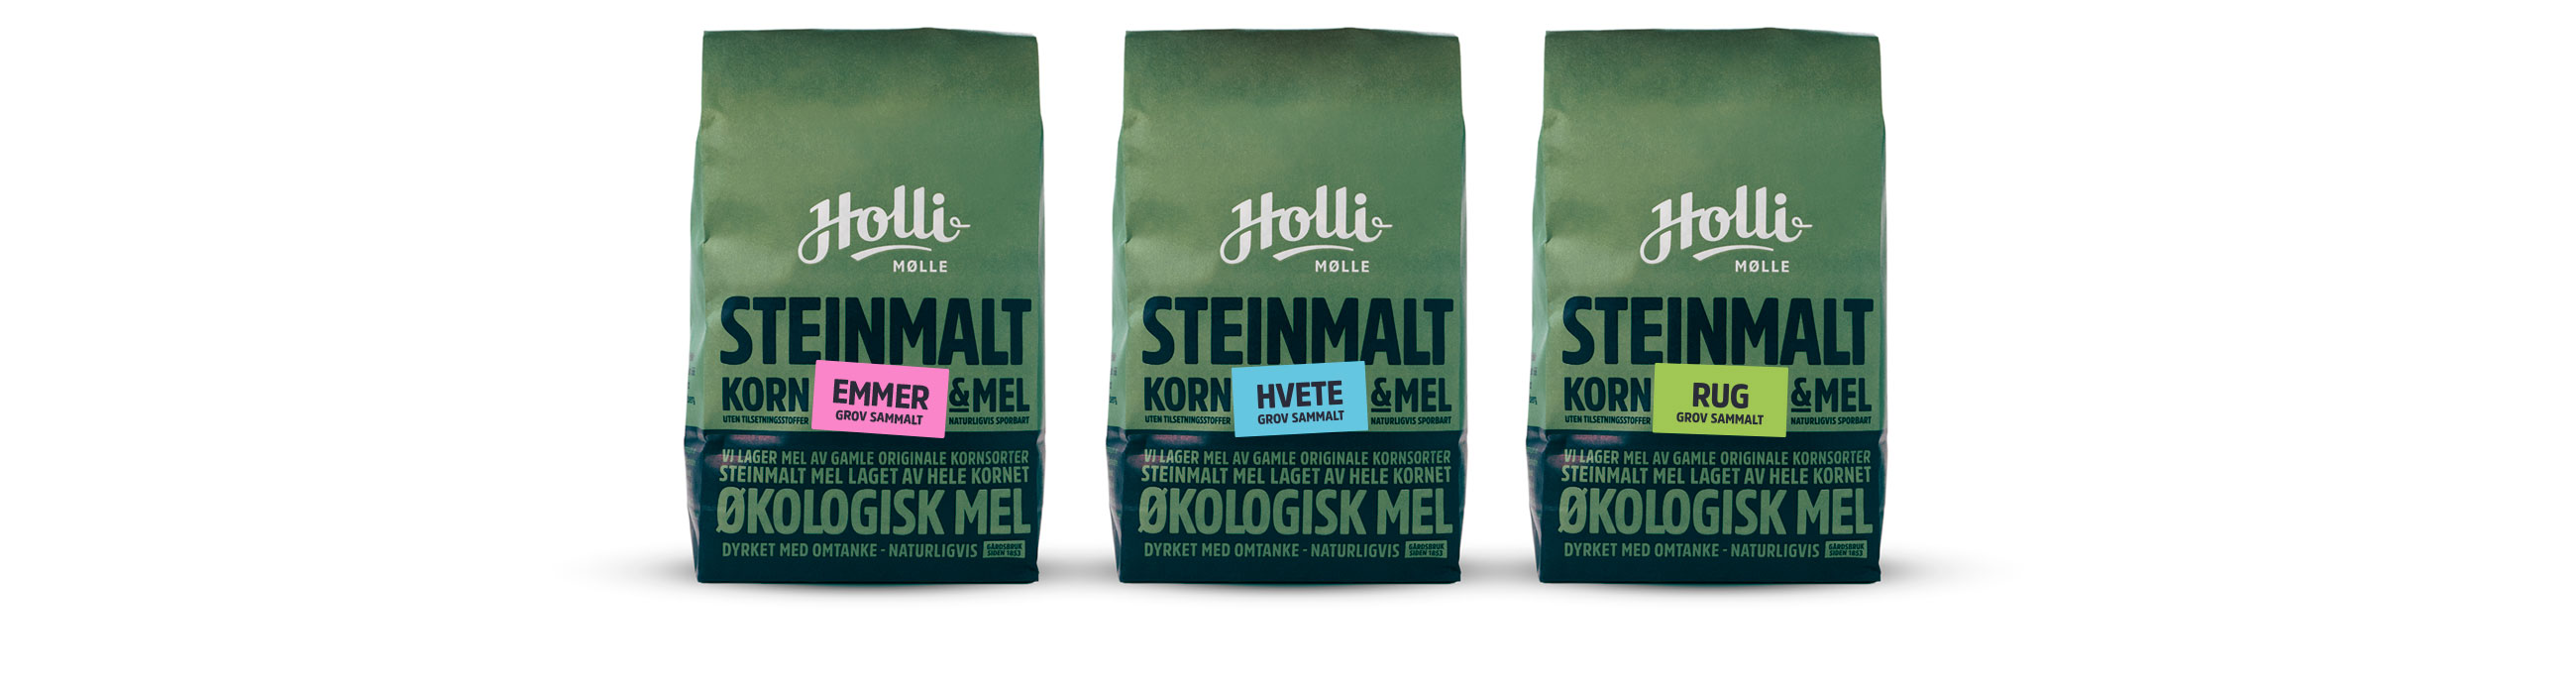 Holli Mølle grov sammalt hvete, rug og emmer. Emballasje packaging design.